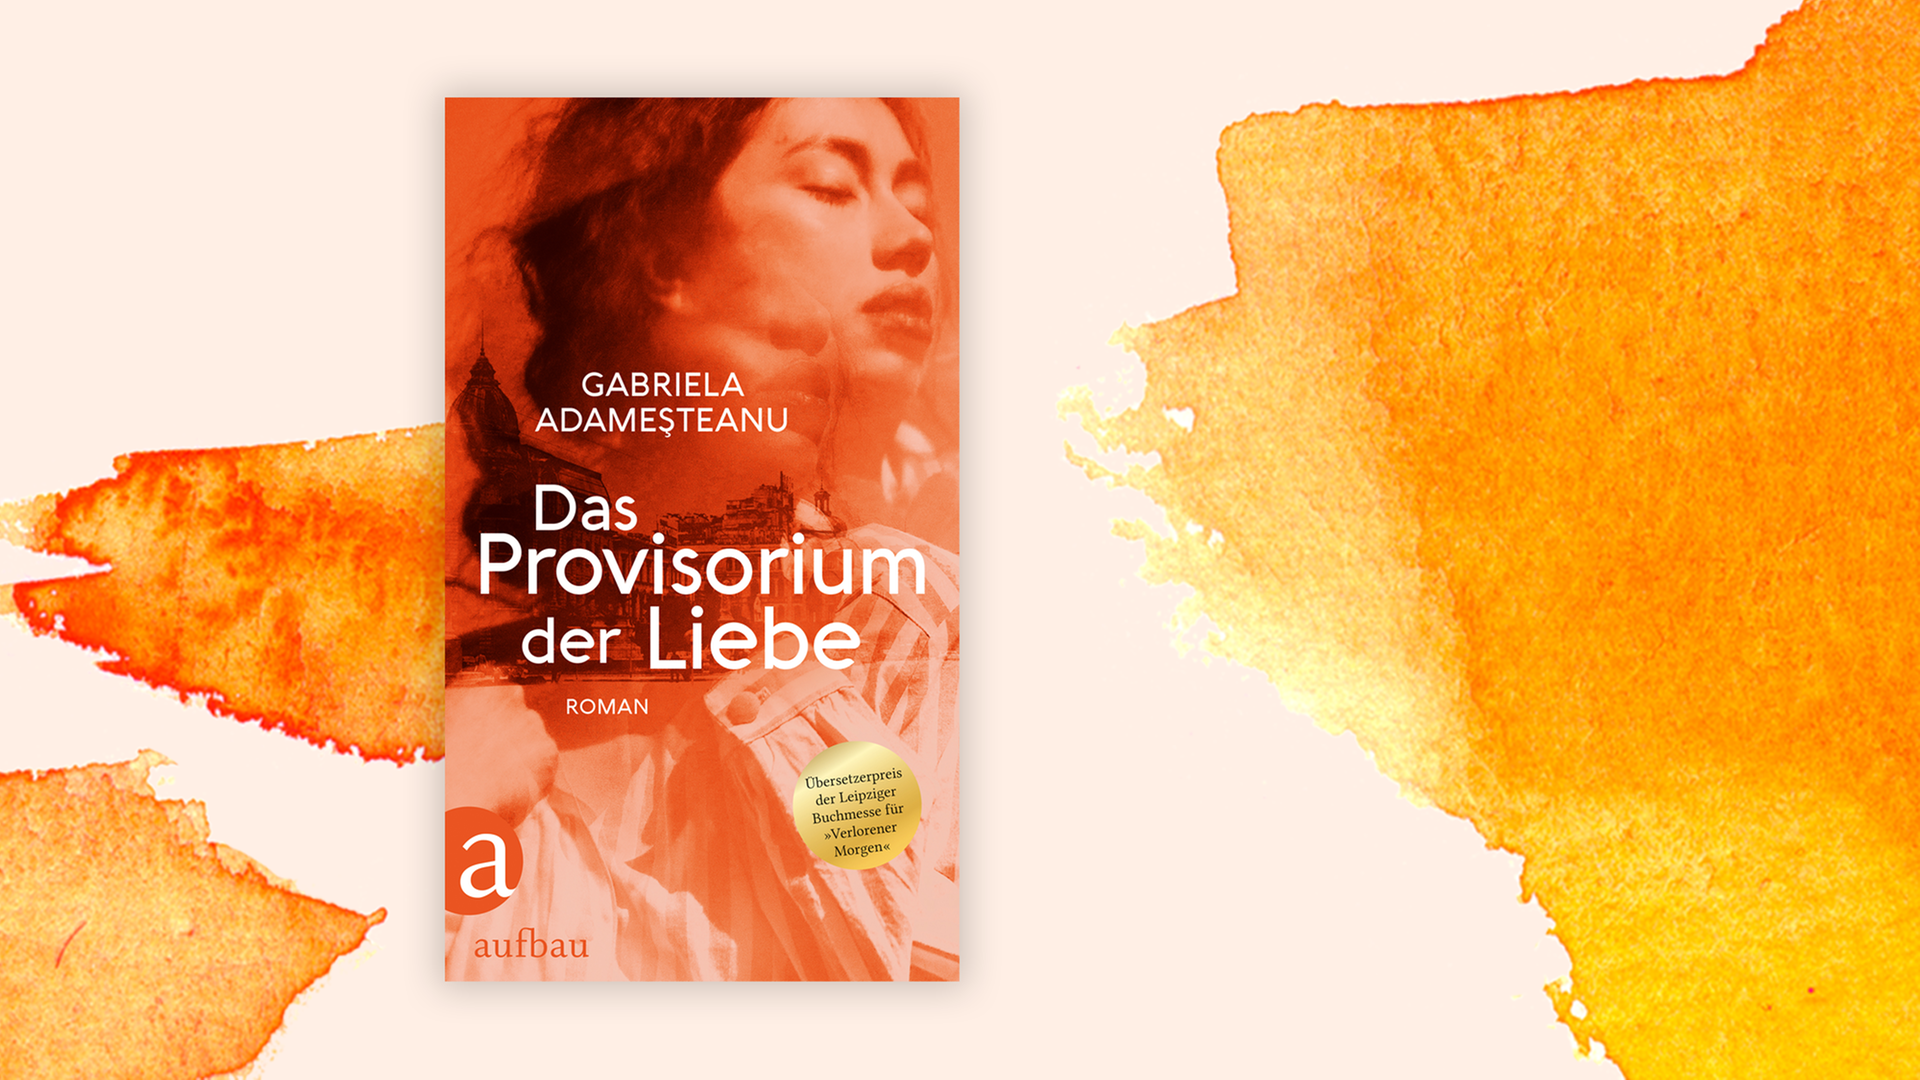 Zu sehen ist das Cover des Buches "Das Provisorium der Liebe" von Gabriela Adameşteanu.